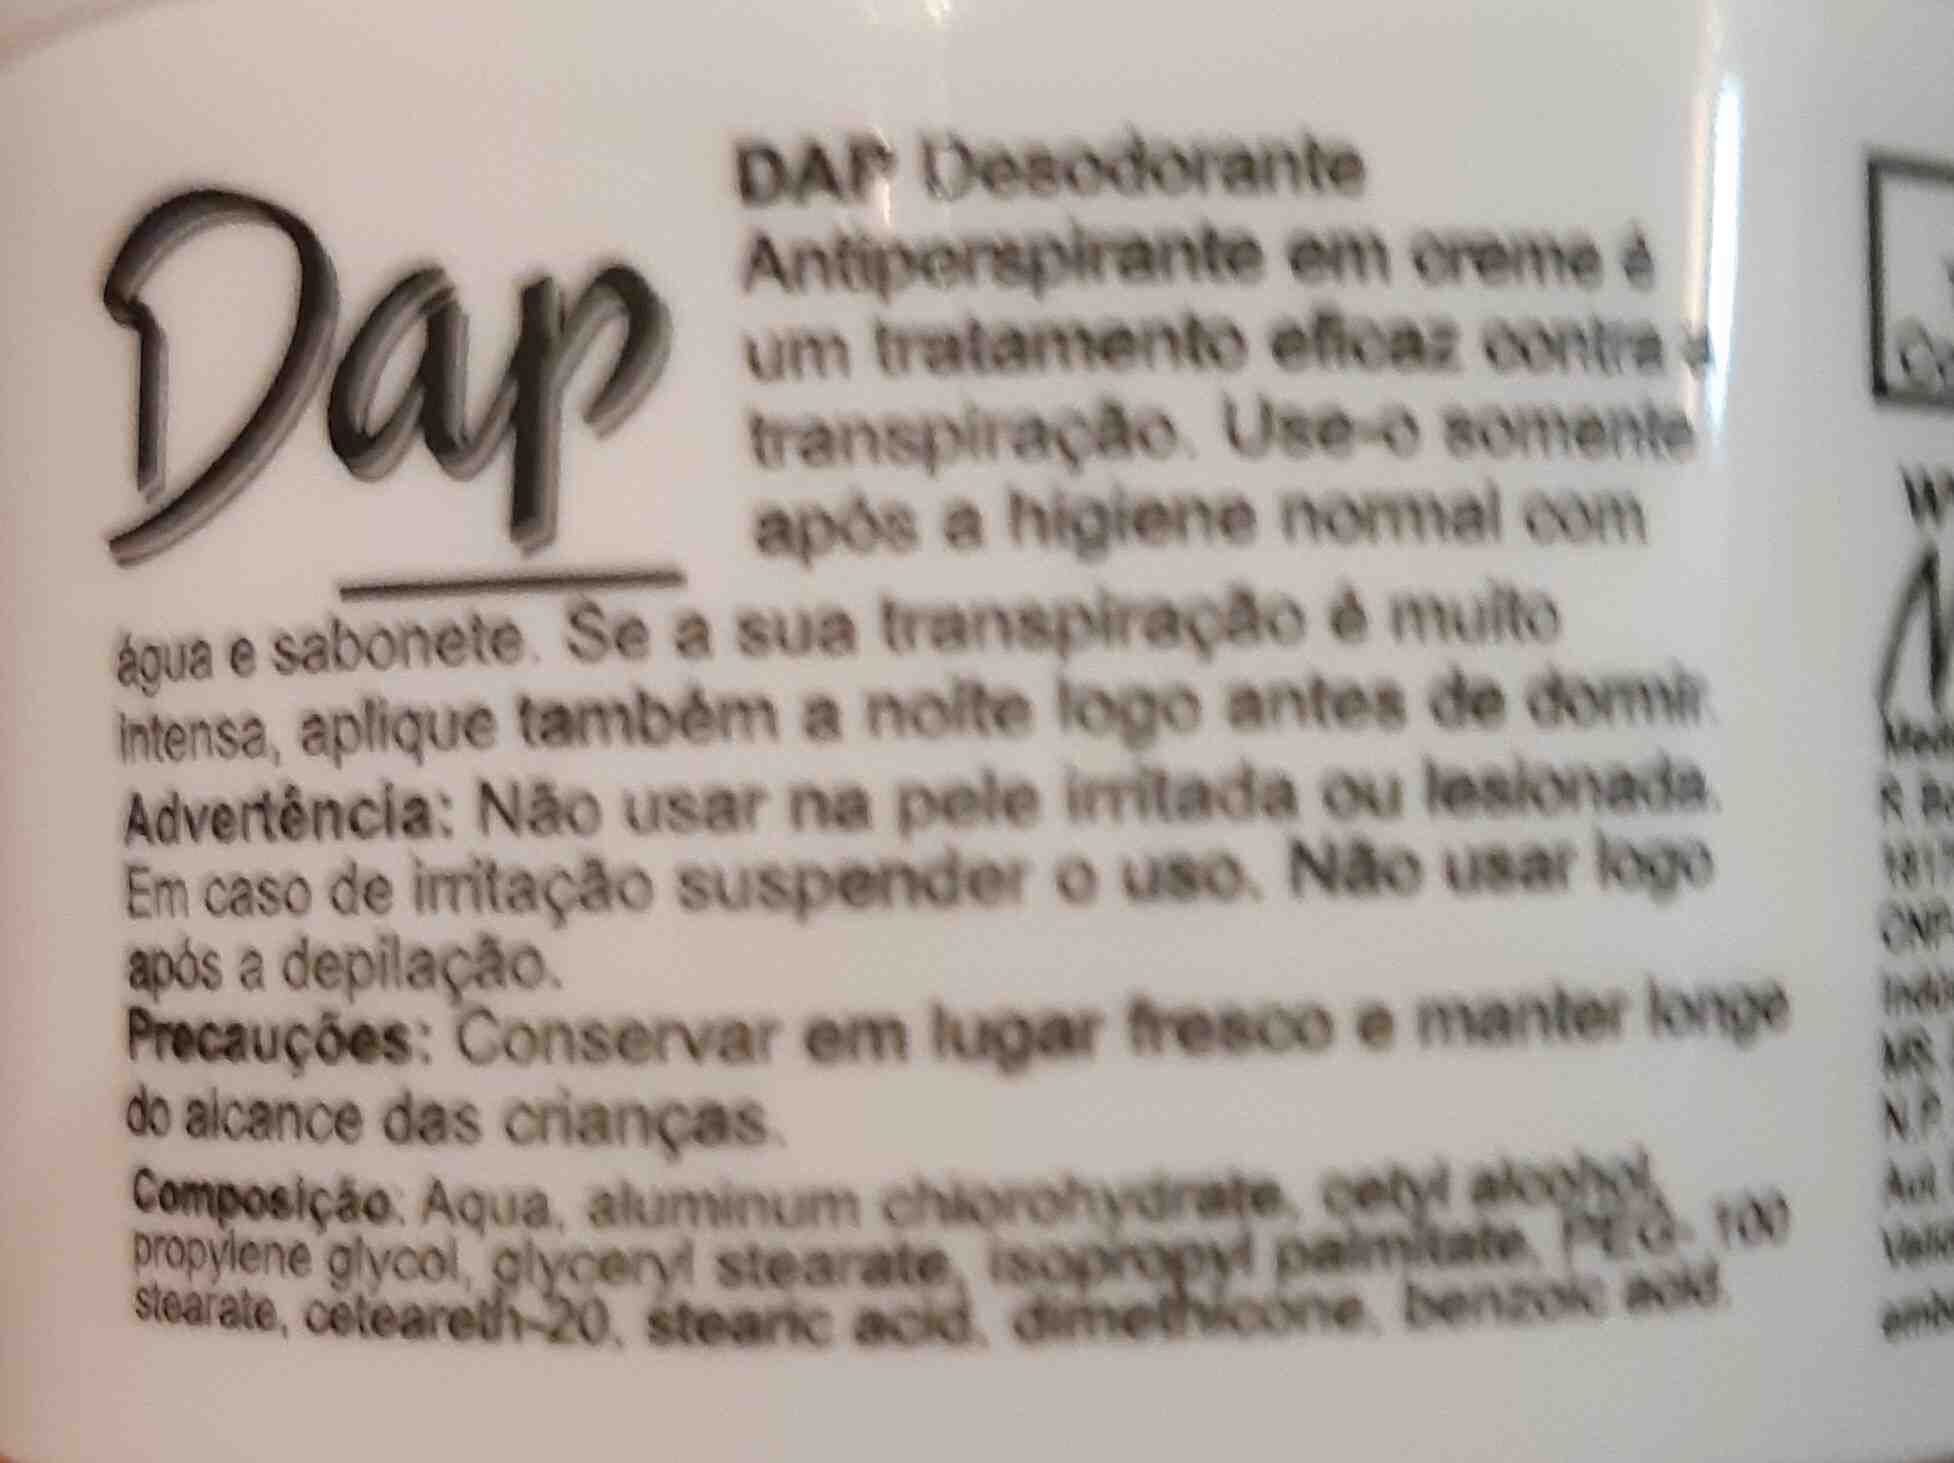 Dap desodorante - 原材料 - en